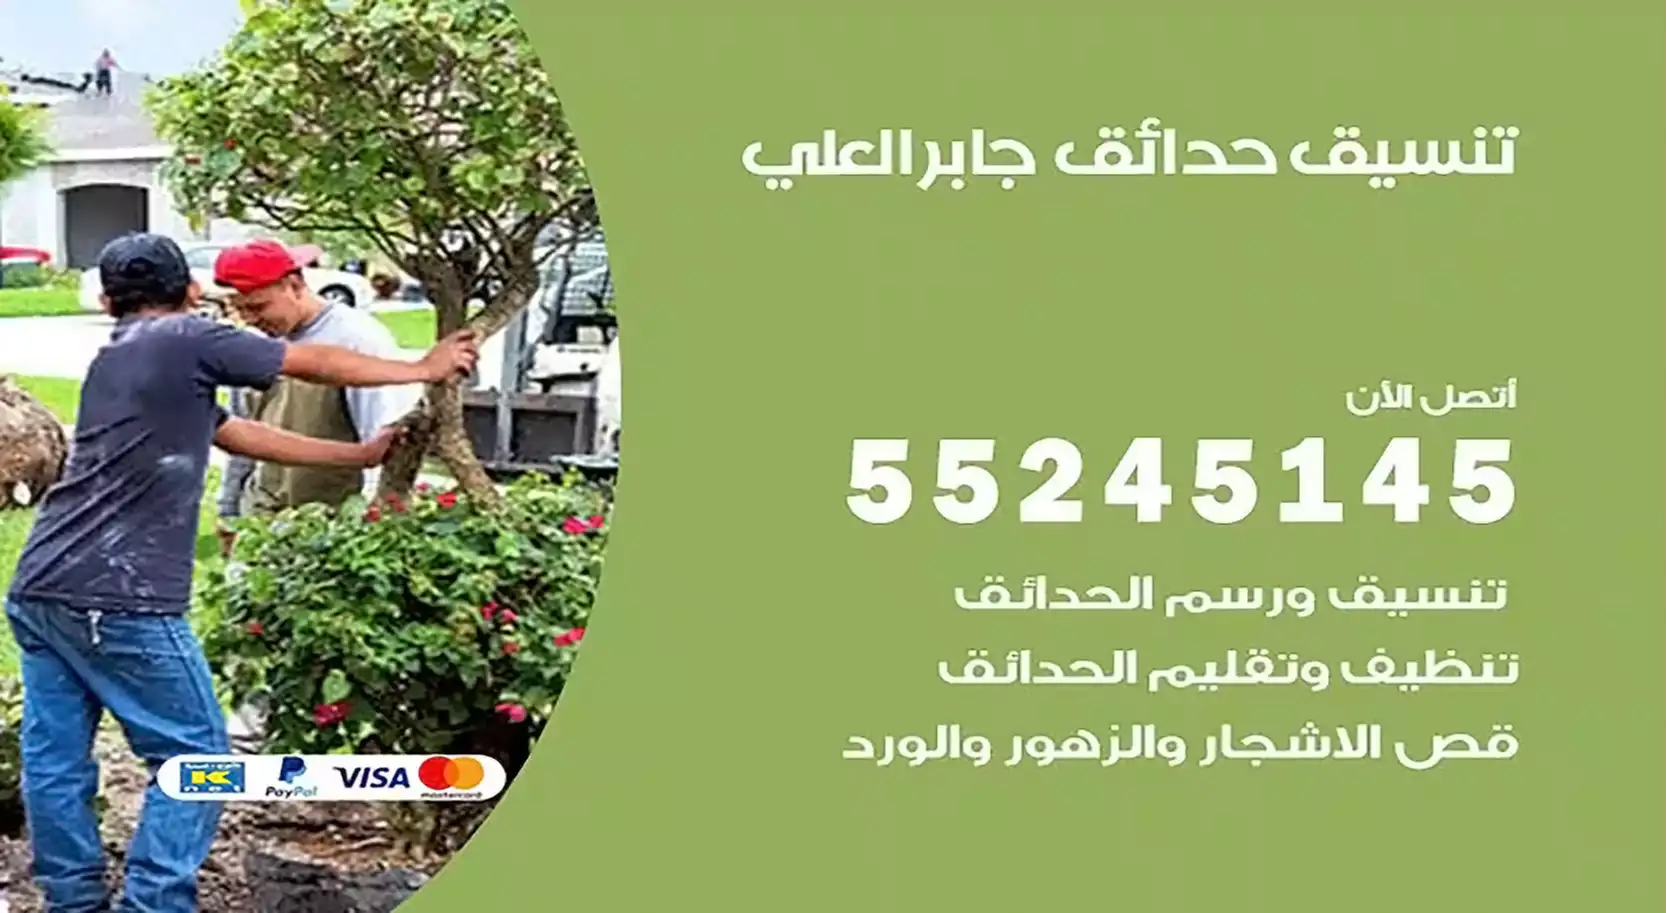 تنسيق حدائق جابر العلي 55245145 تصميم و تنسيق حدائق منزلية